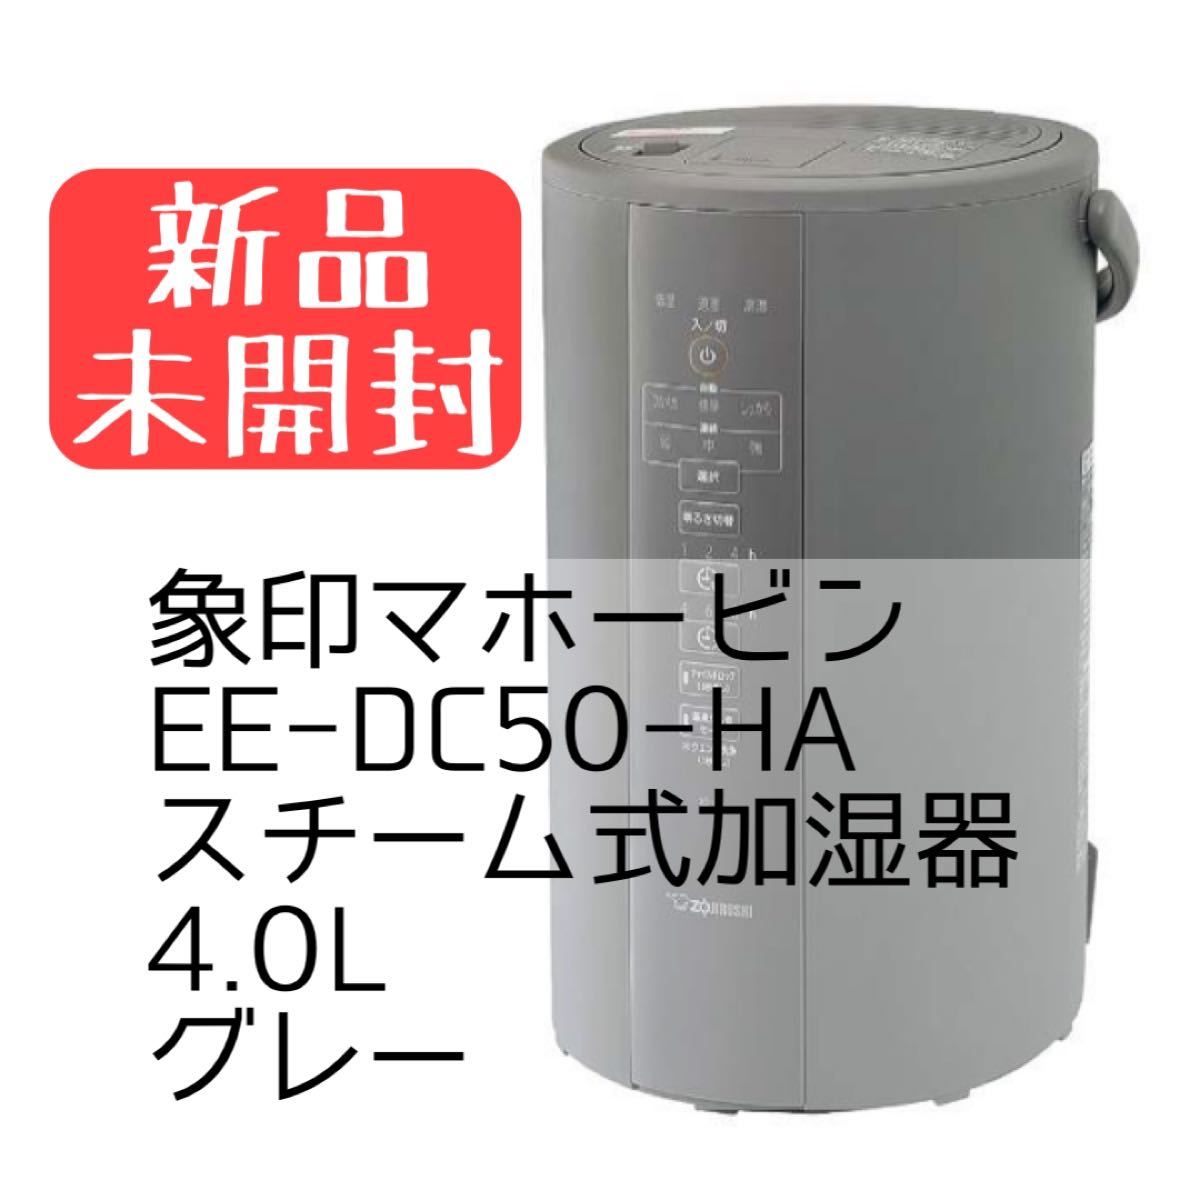 に値下げ！ 【新品未開封】象印 スチーム式加湿器 EE-DC50-HA 4.0L